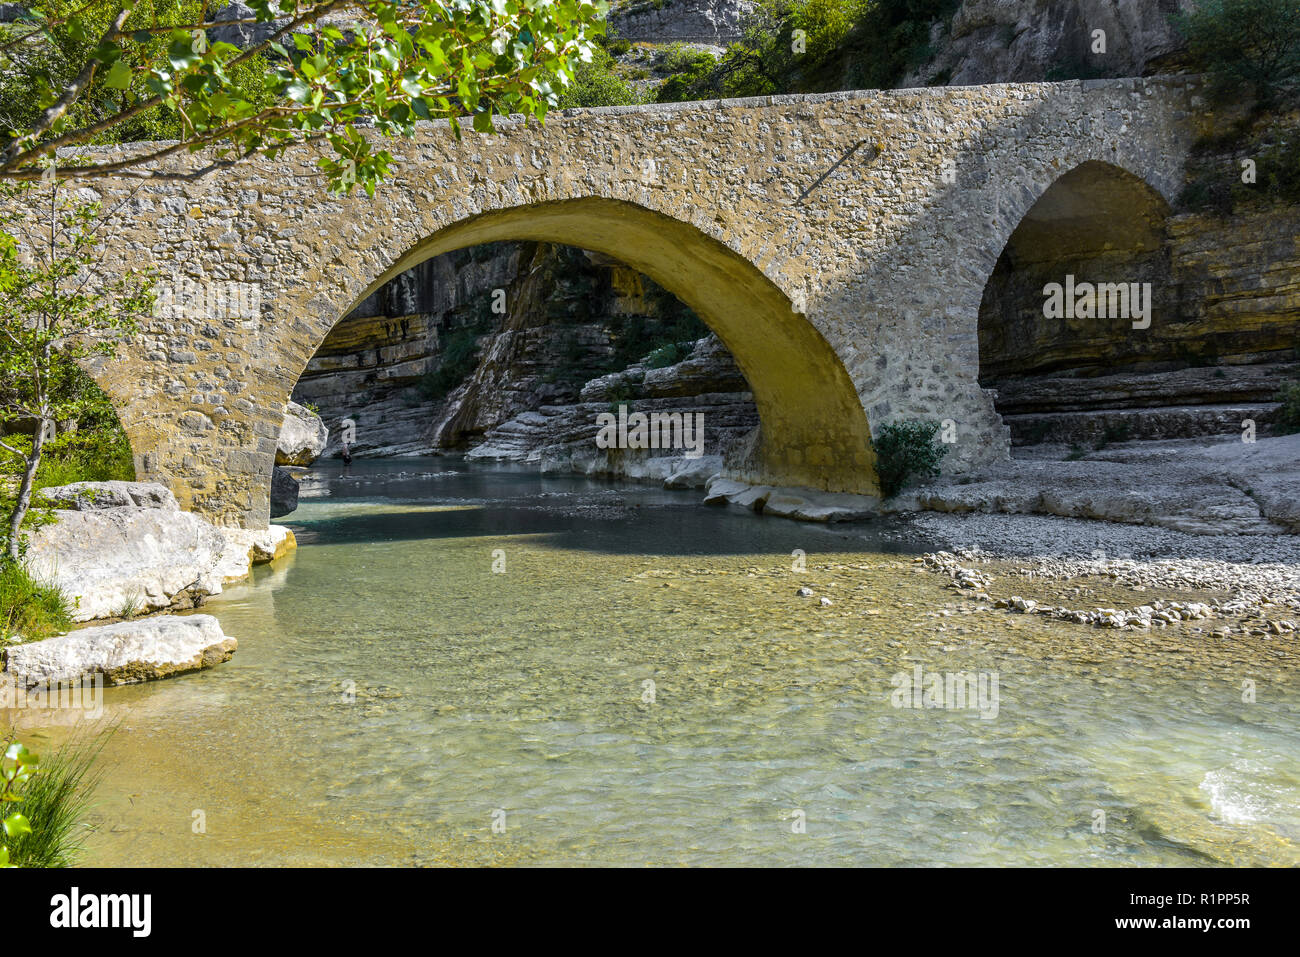 old stone bridge with arches, Provence, France, Gorges de la Méouge, region Provence-Alpes-Côte d'Azur Stock Photo